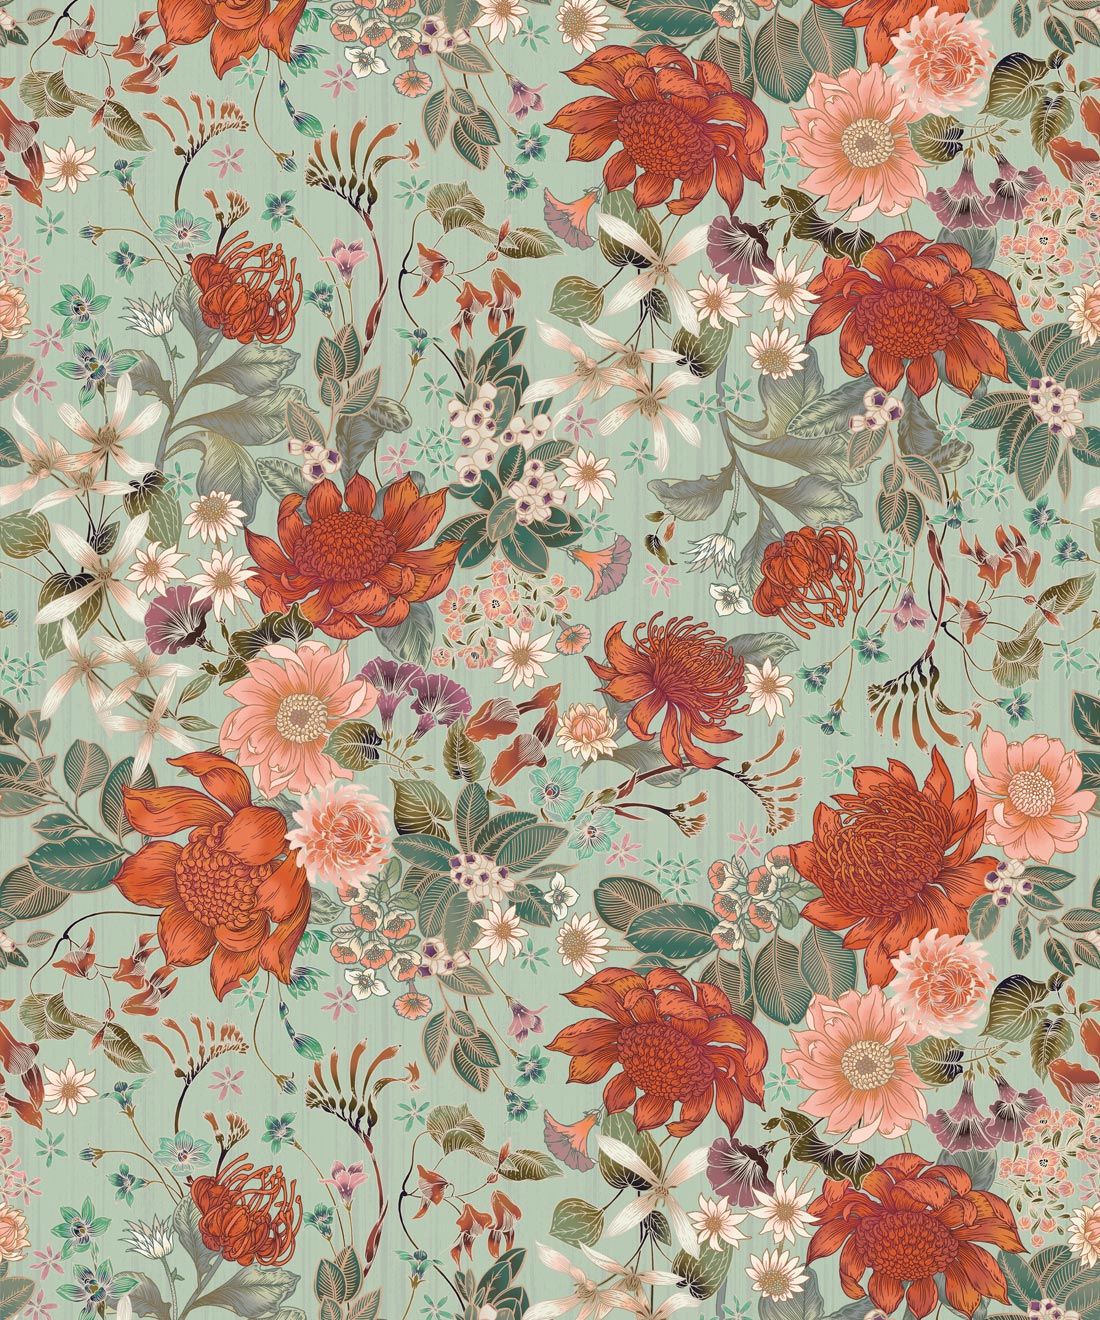 Bouquet Wallpaper • Eloise Short • Vintage Floral Wallpaper • Granny Chic Wallpaper • Grandmillennial Style Wallpaper • Pistachio • Swatch